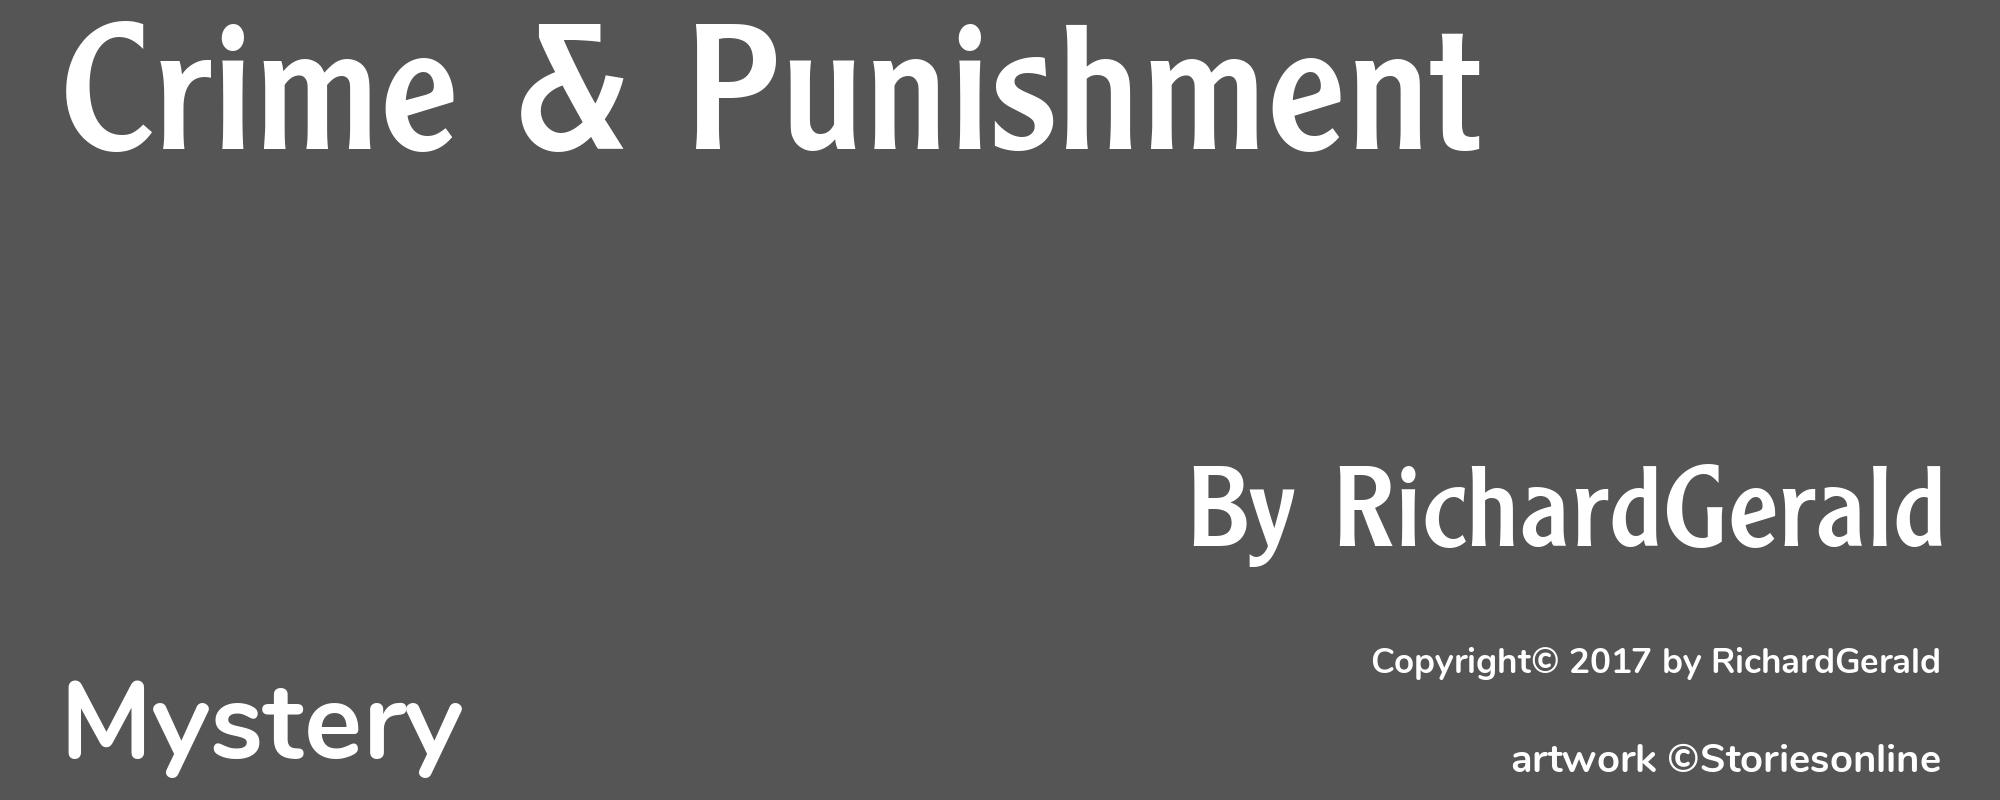 Crime & Punishment - Cover